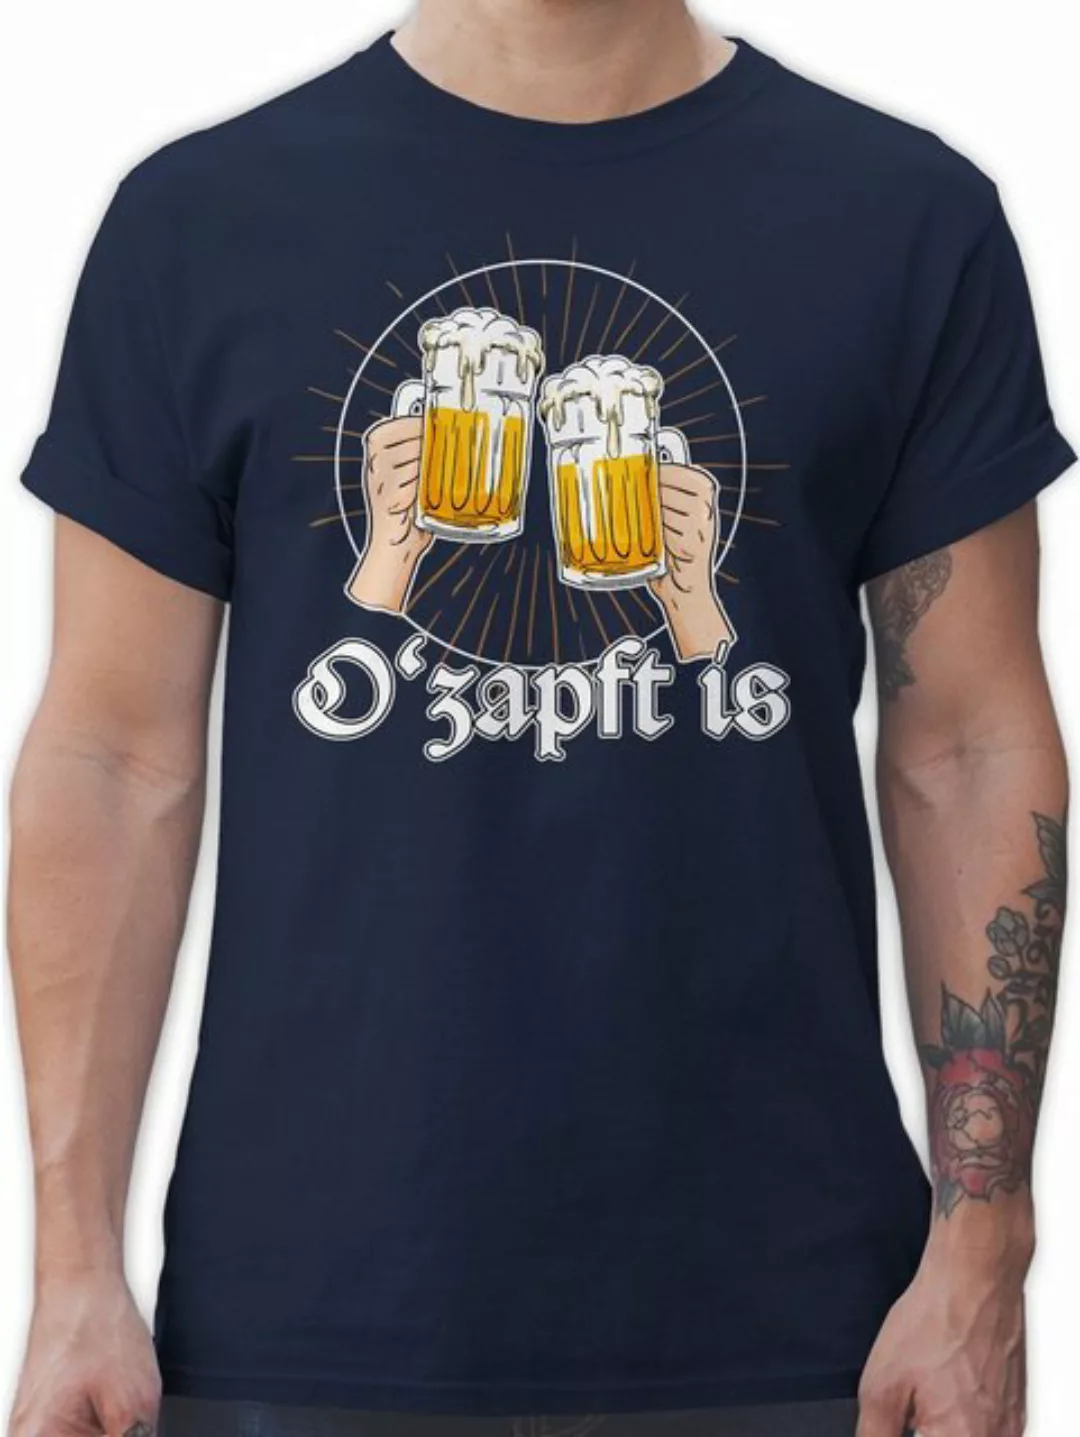 Shirtracer T-Shirt O Zapft is Bier O'zapft is Anstich Es ist angezapft Mode günstig online kaufen